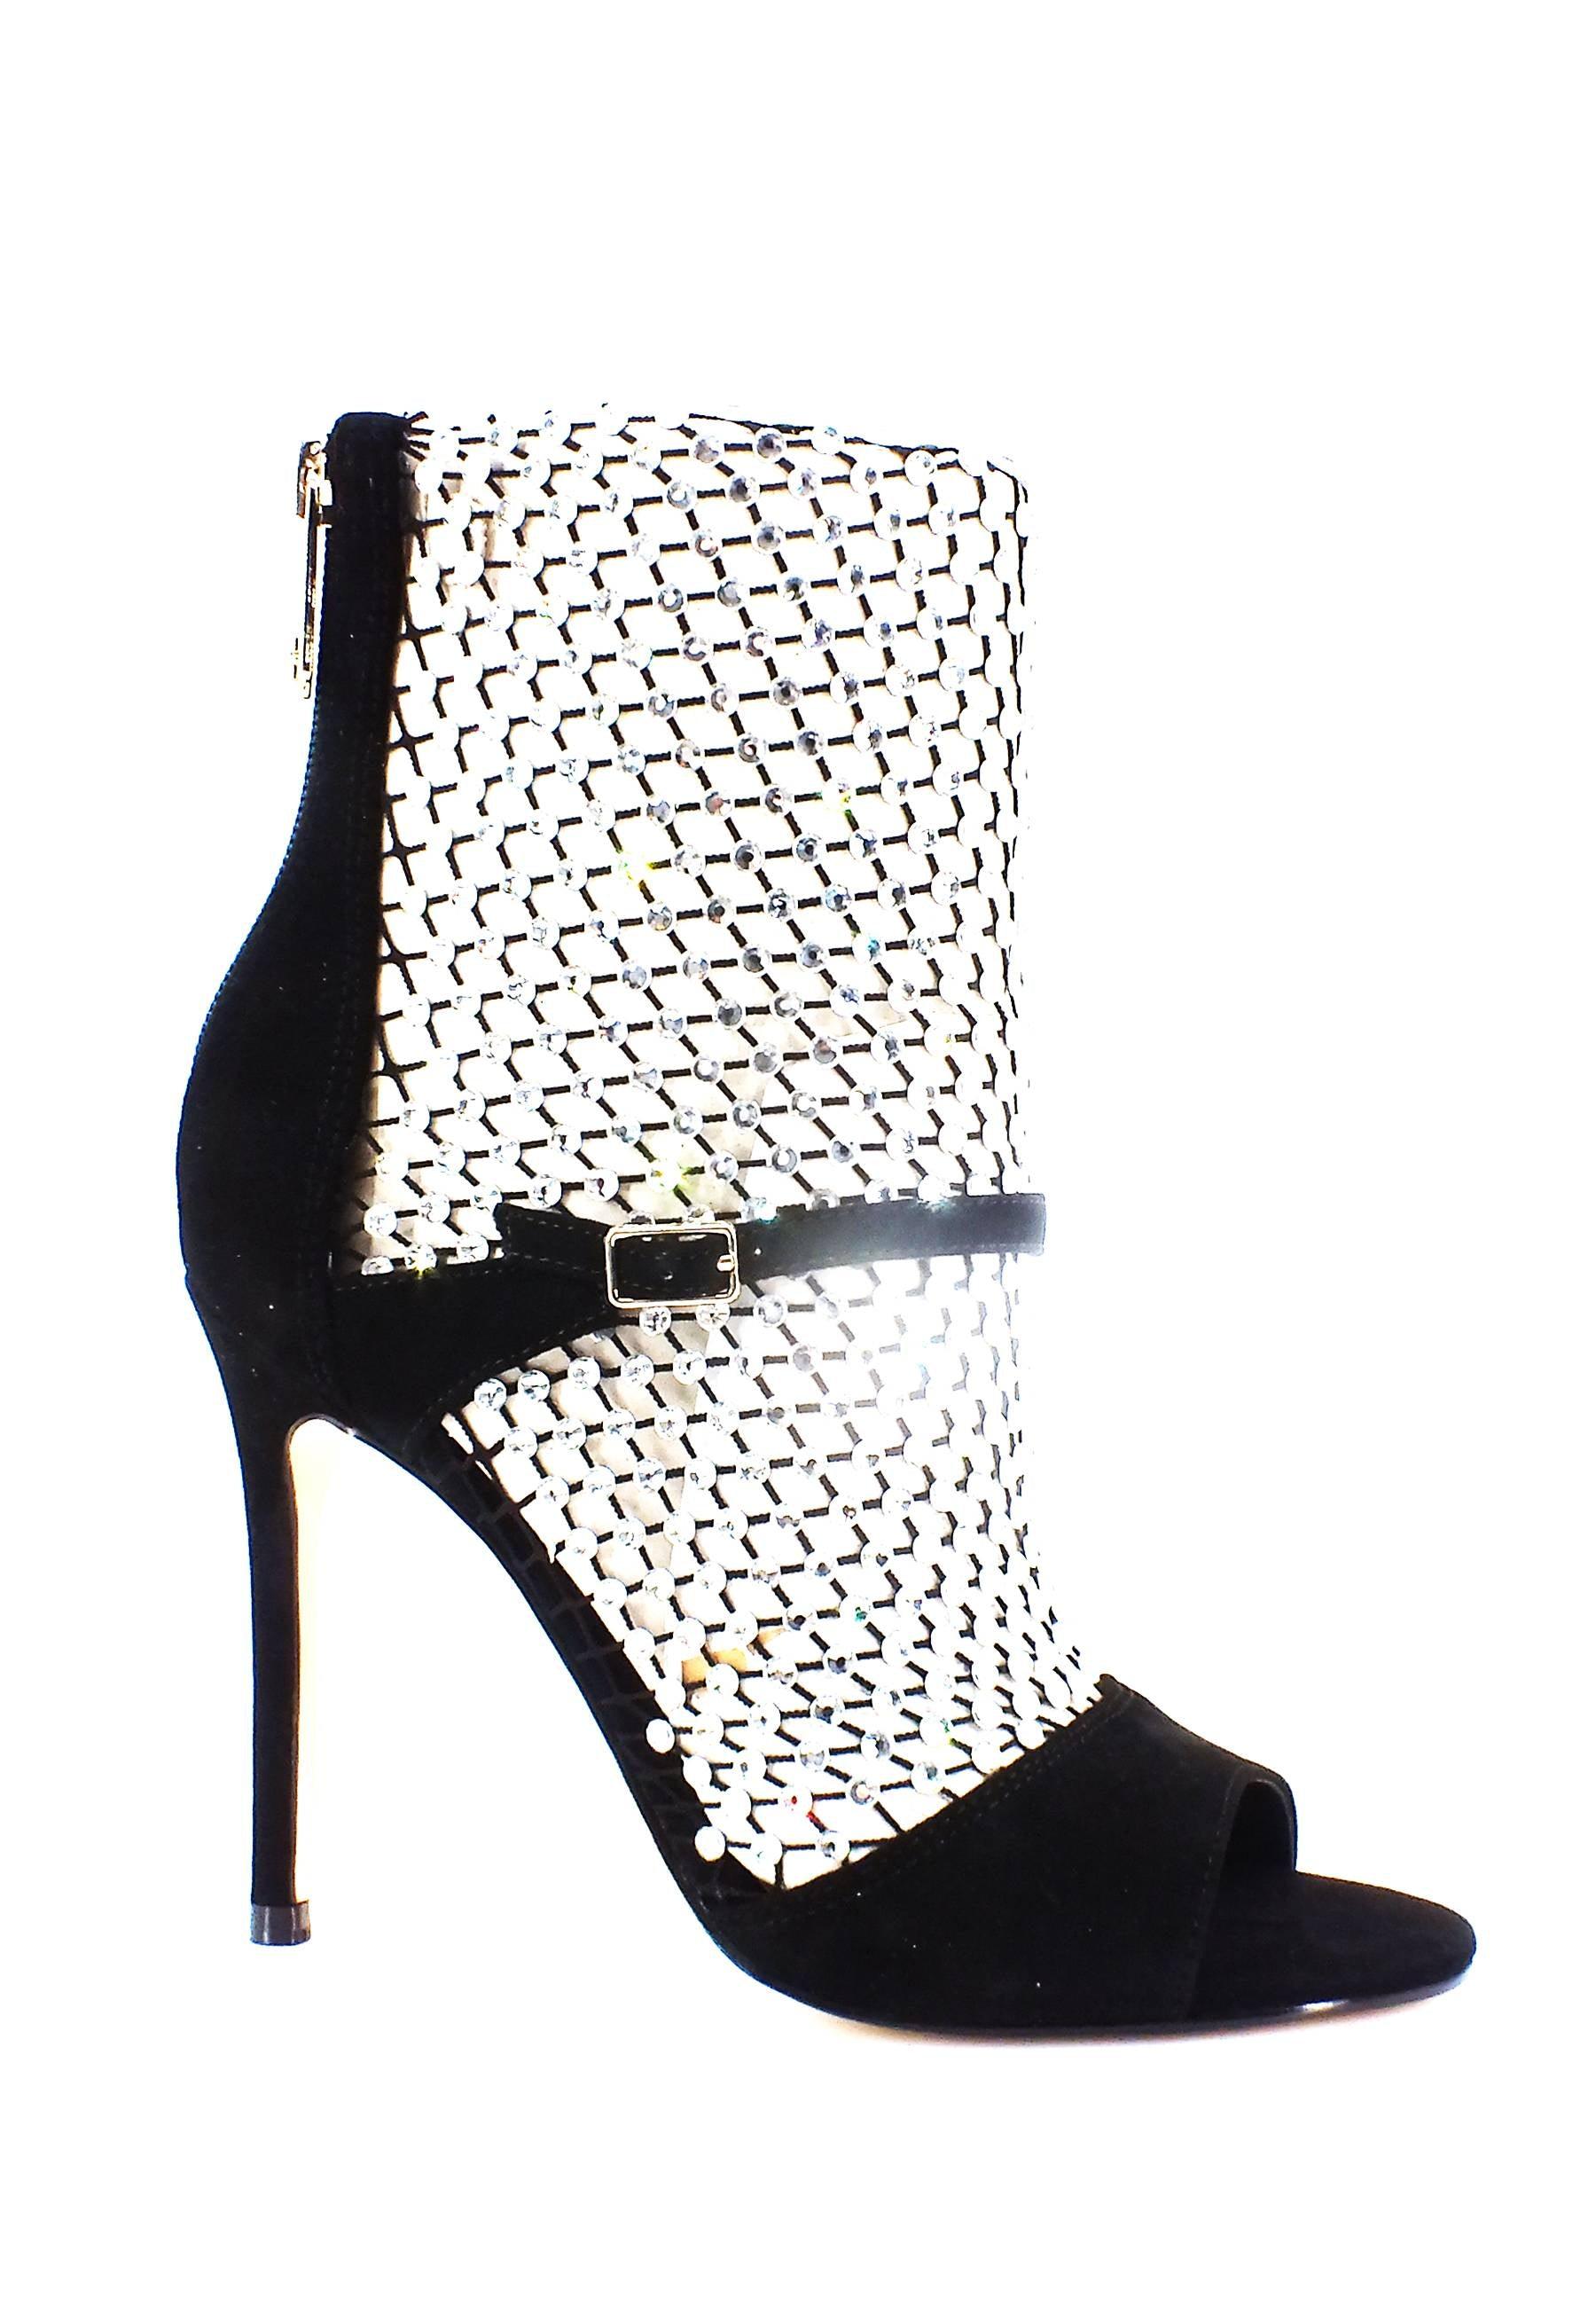 GUESS Sandalo Strass Donna Black FL5DYNFAB10 - Sandrini Calzature e Abbigliamento